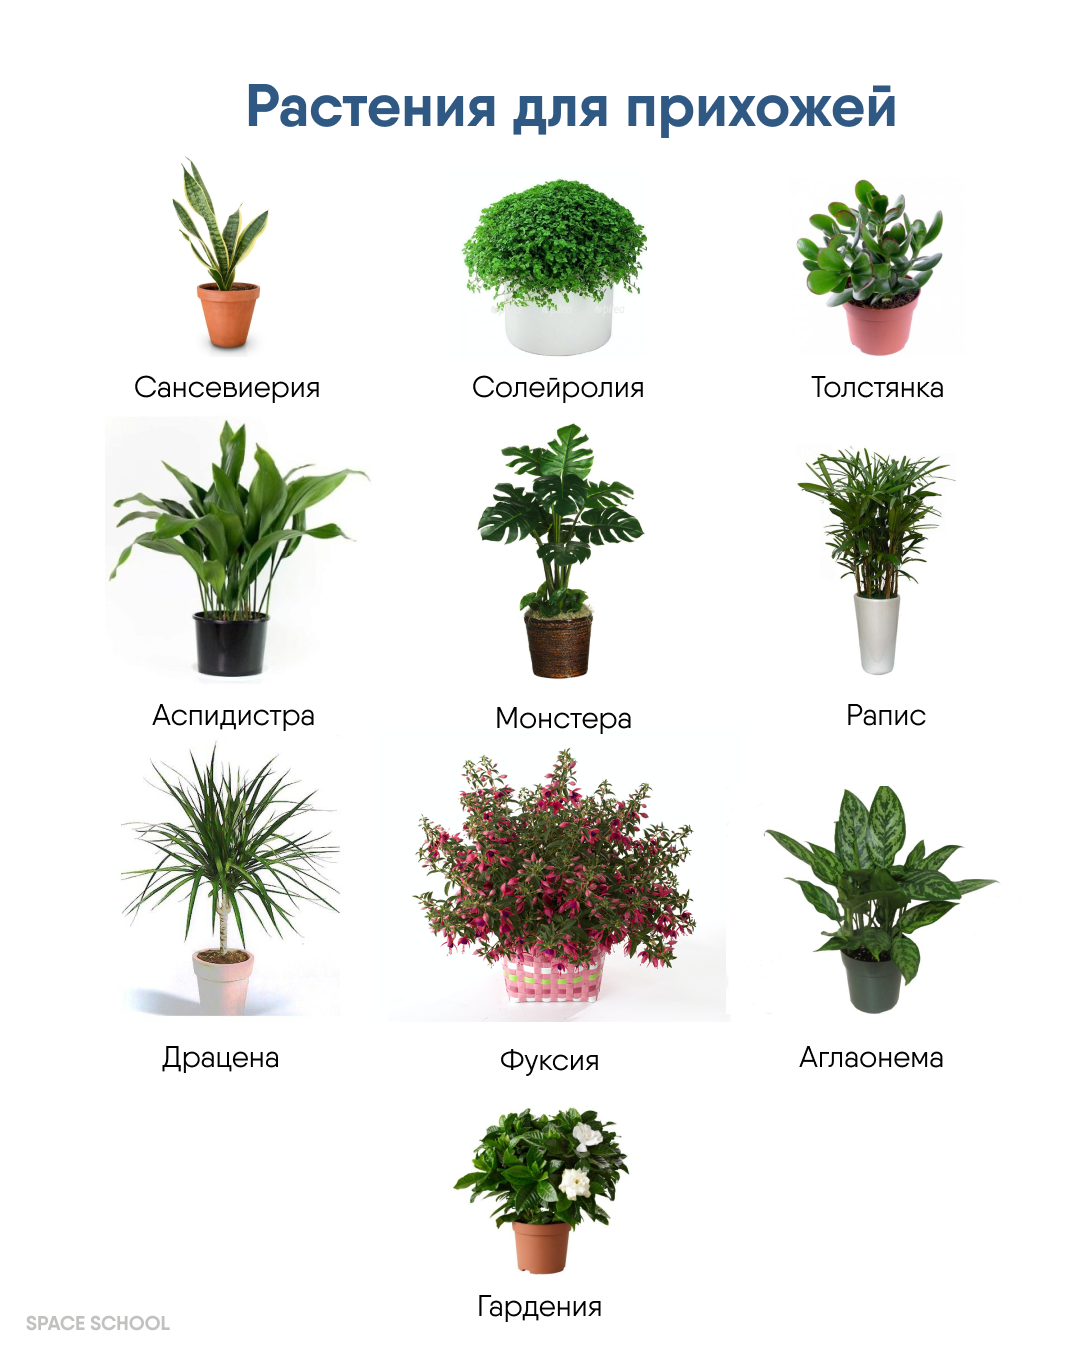 Тенелюбивые растения комнатные с фото и названия